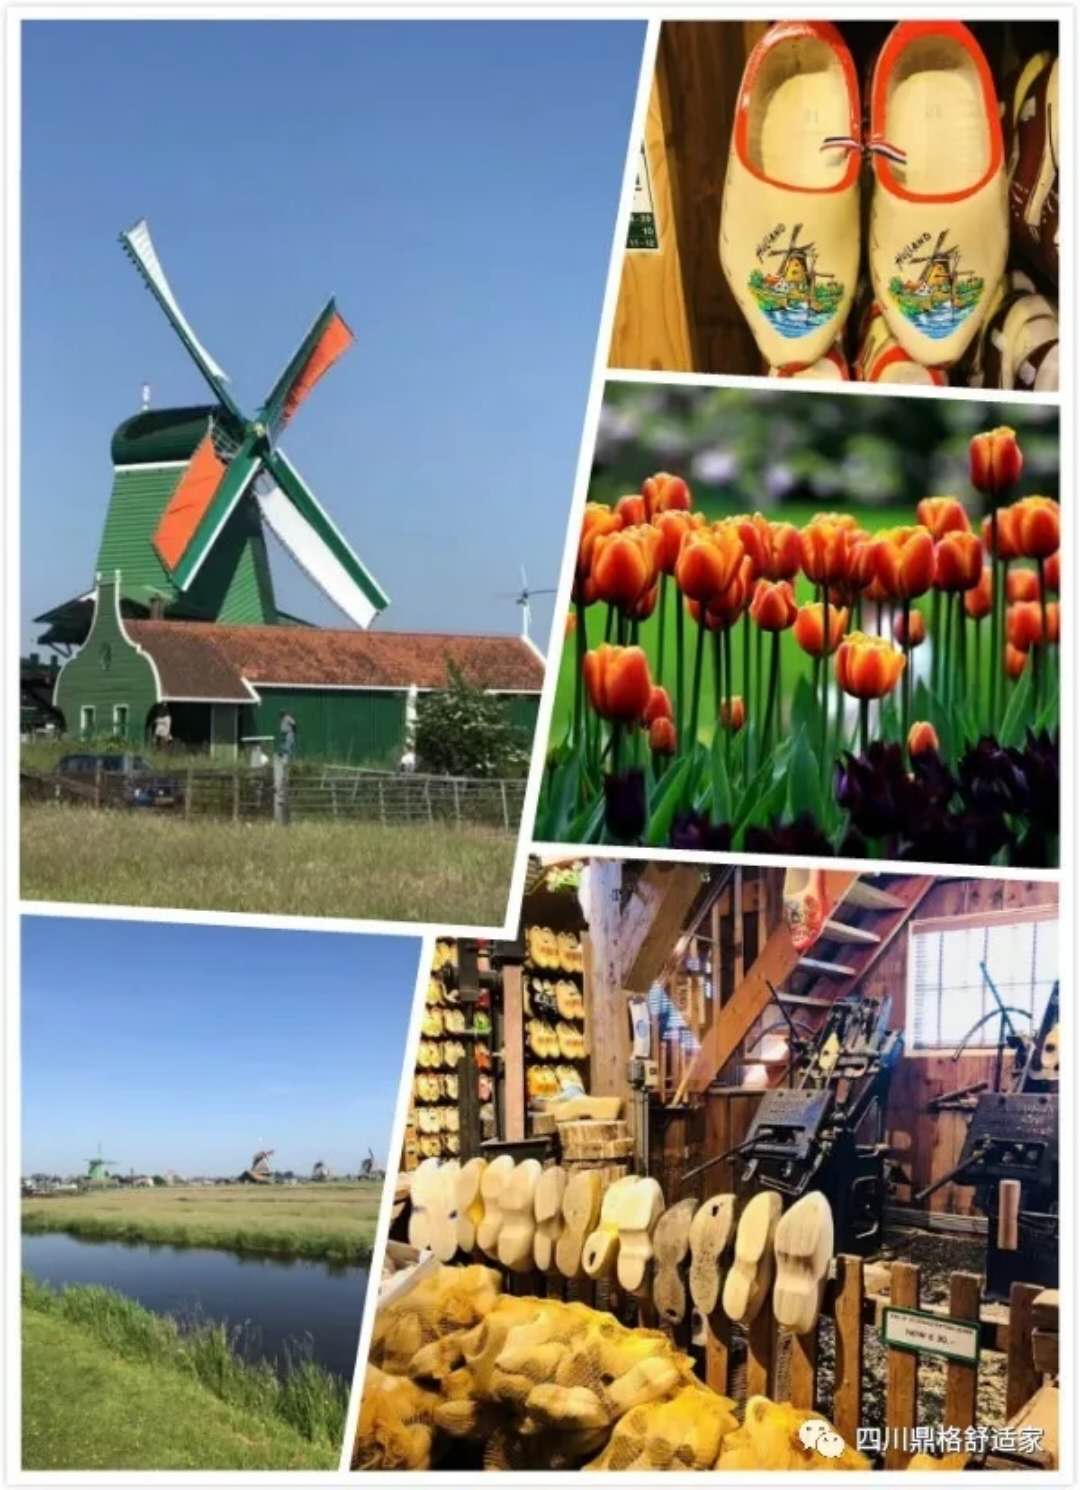 都说荷兰有三宝,你知道是哪三宝吗?没错,是郁金香,风车和木鞋